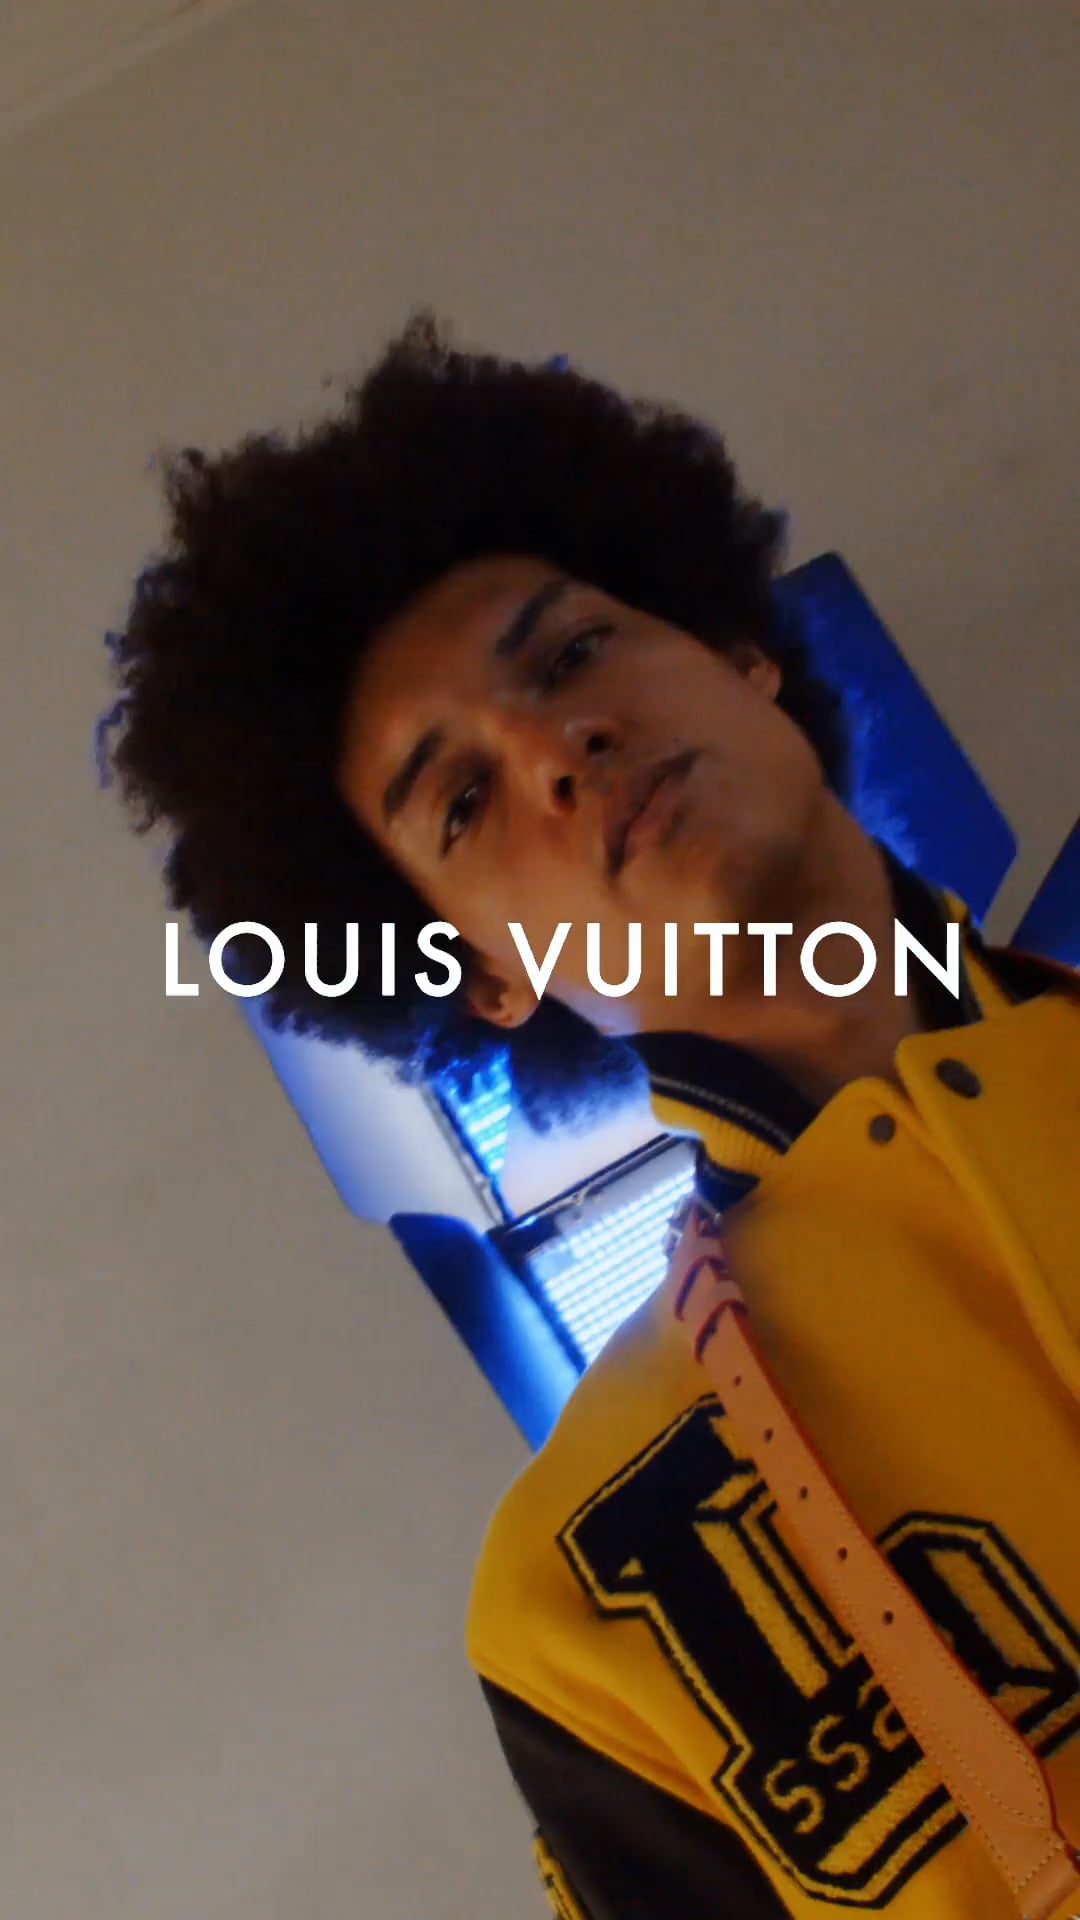 LOUIS VUITTON SS22 on Vimeo